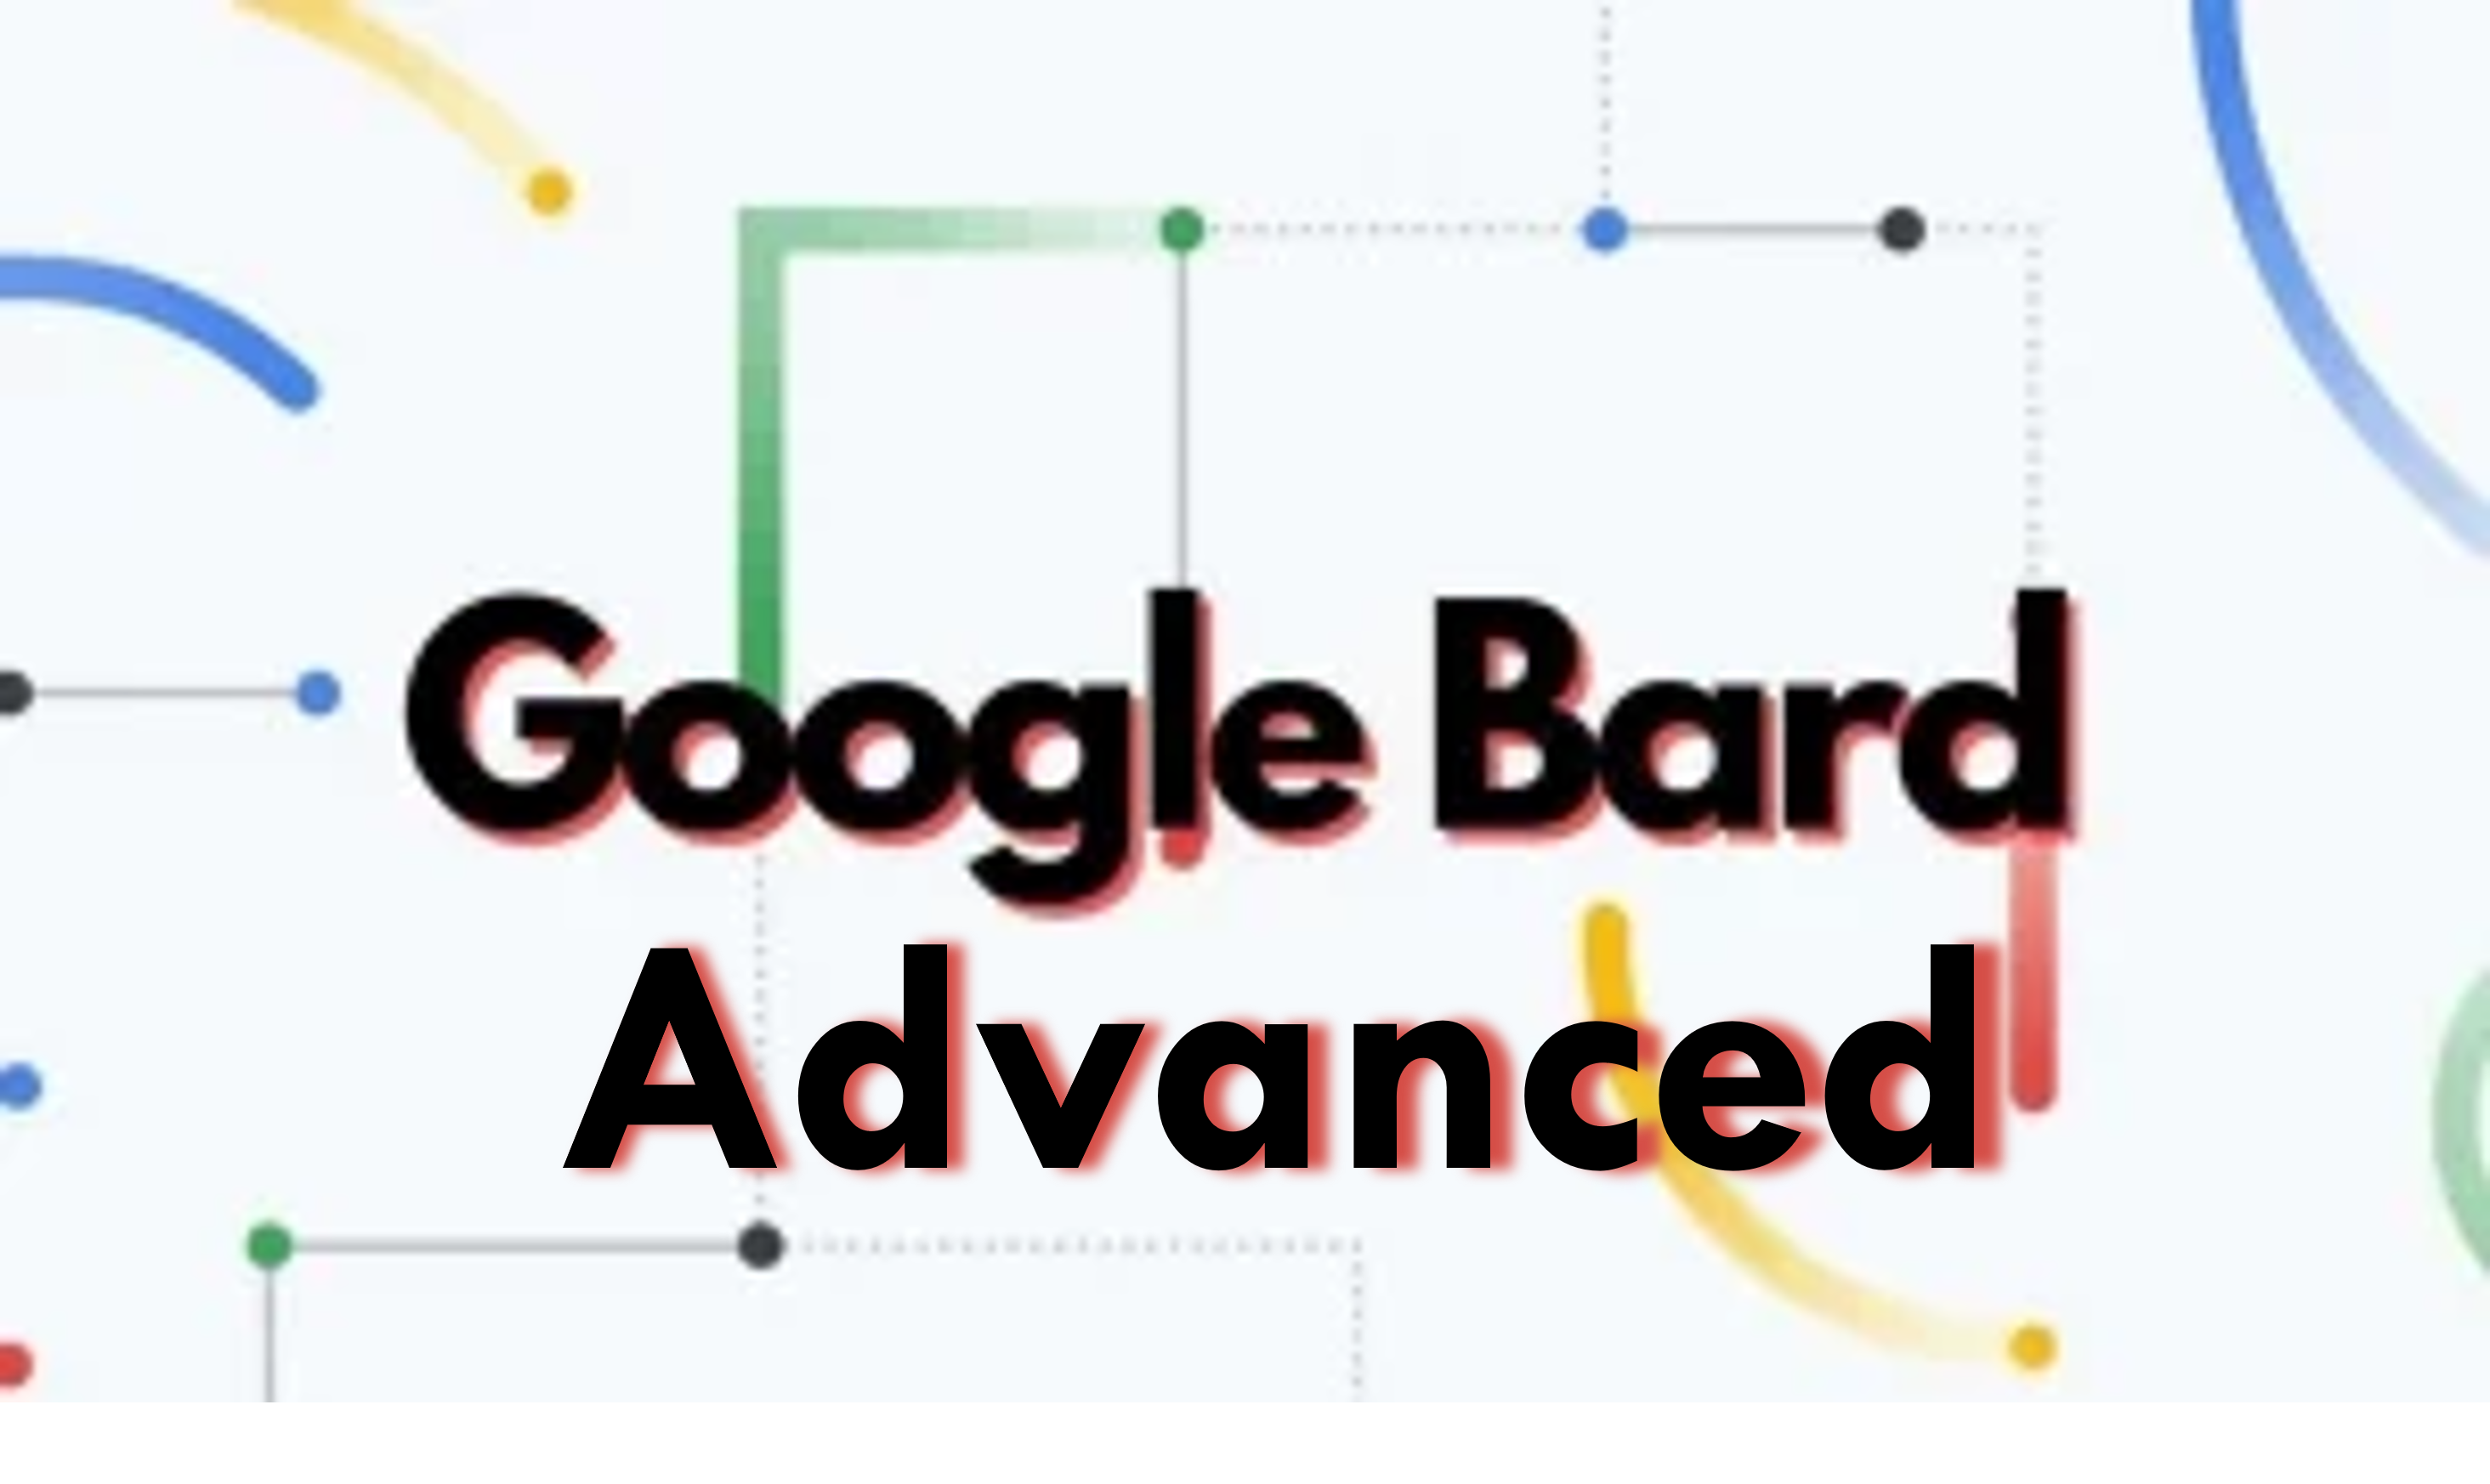 Få en gratis 3 måneders prøveversjon av Google Bard Advanced; Opplev fremtiden til AI Chatbots